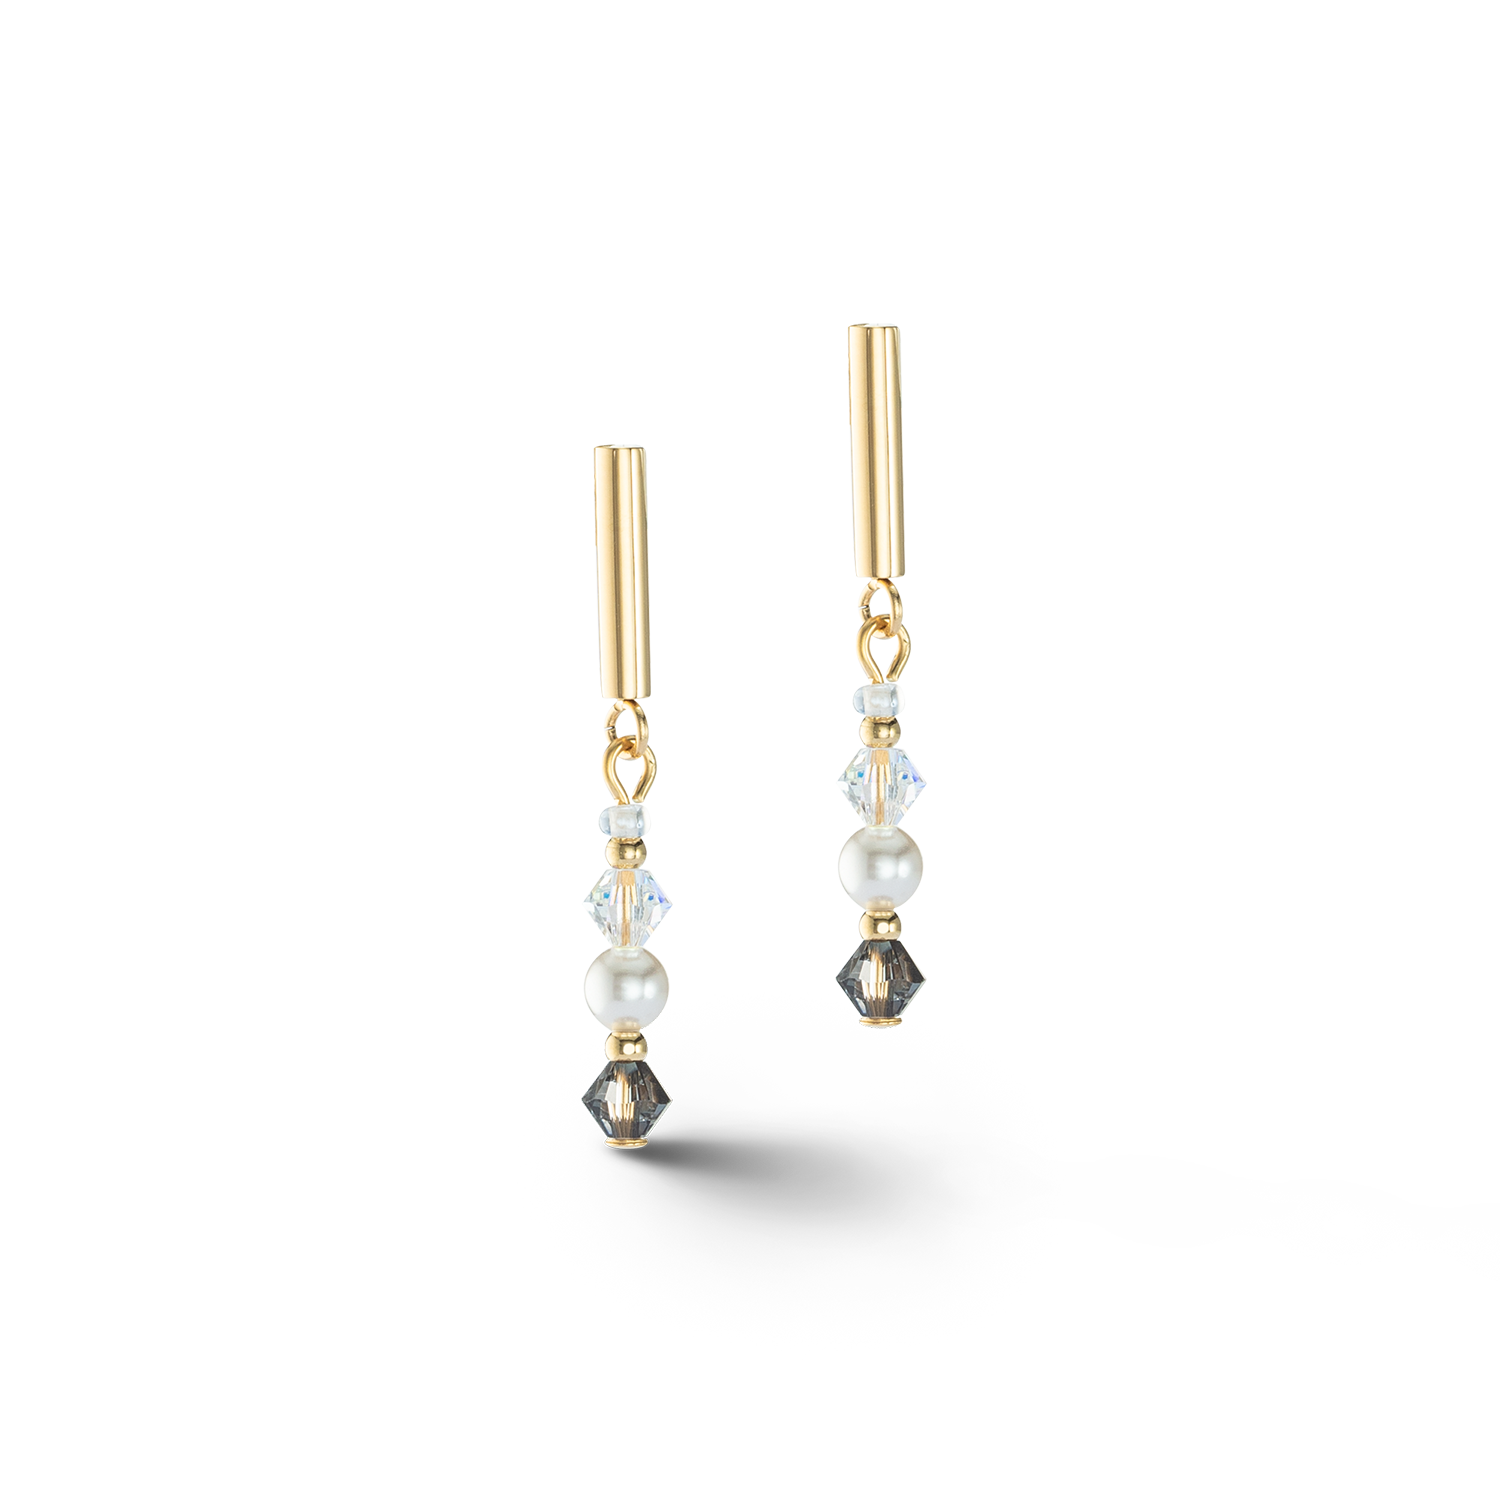 Princess Pearls earringse grey-crystal